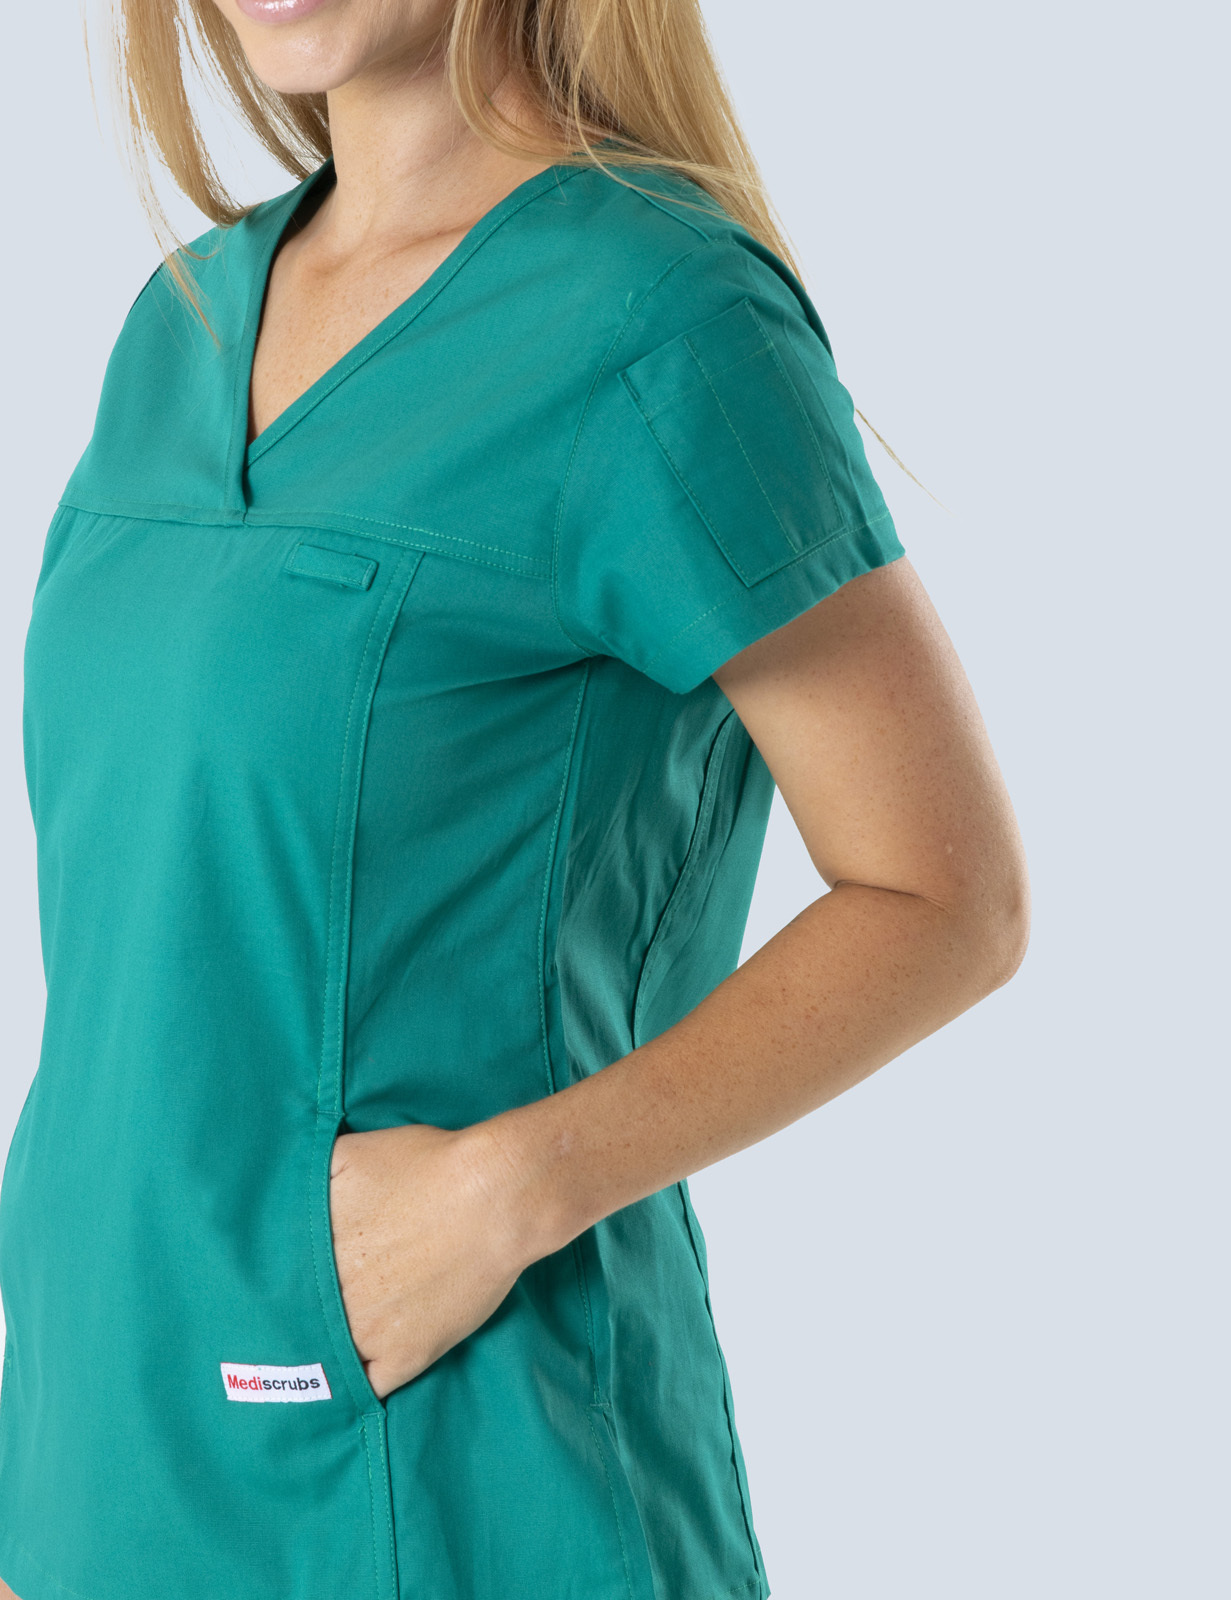 Queensland Children's Hospital Emergency Department Registrar Uniform Top Bundle  (Women's Fit Top in Hunter  incl Logos)